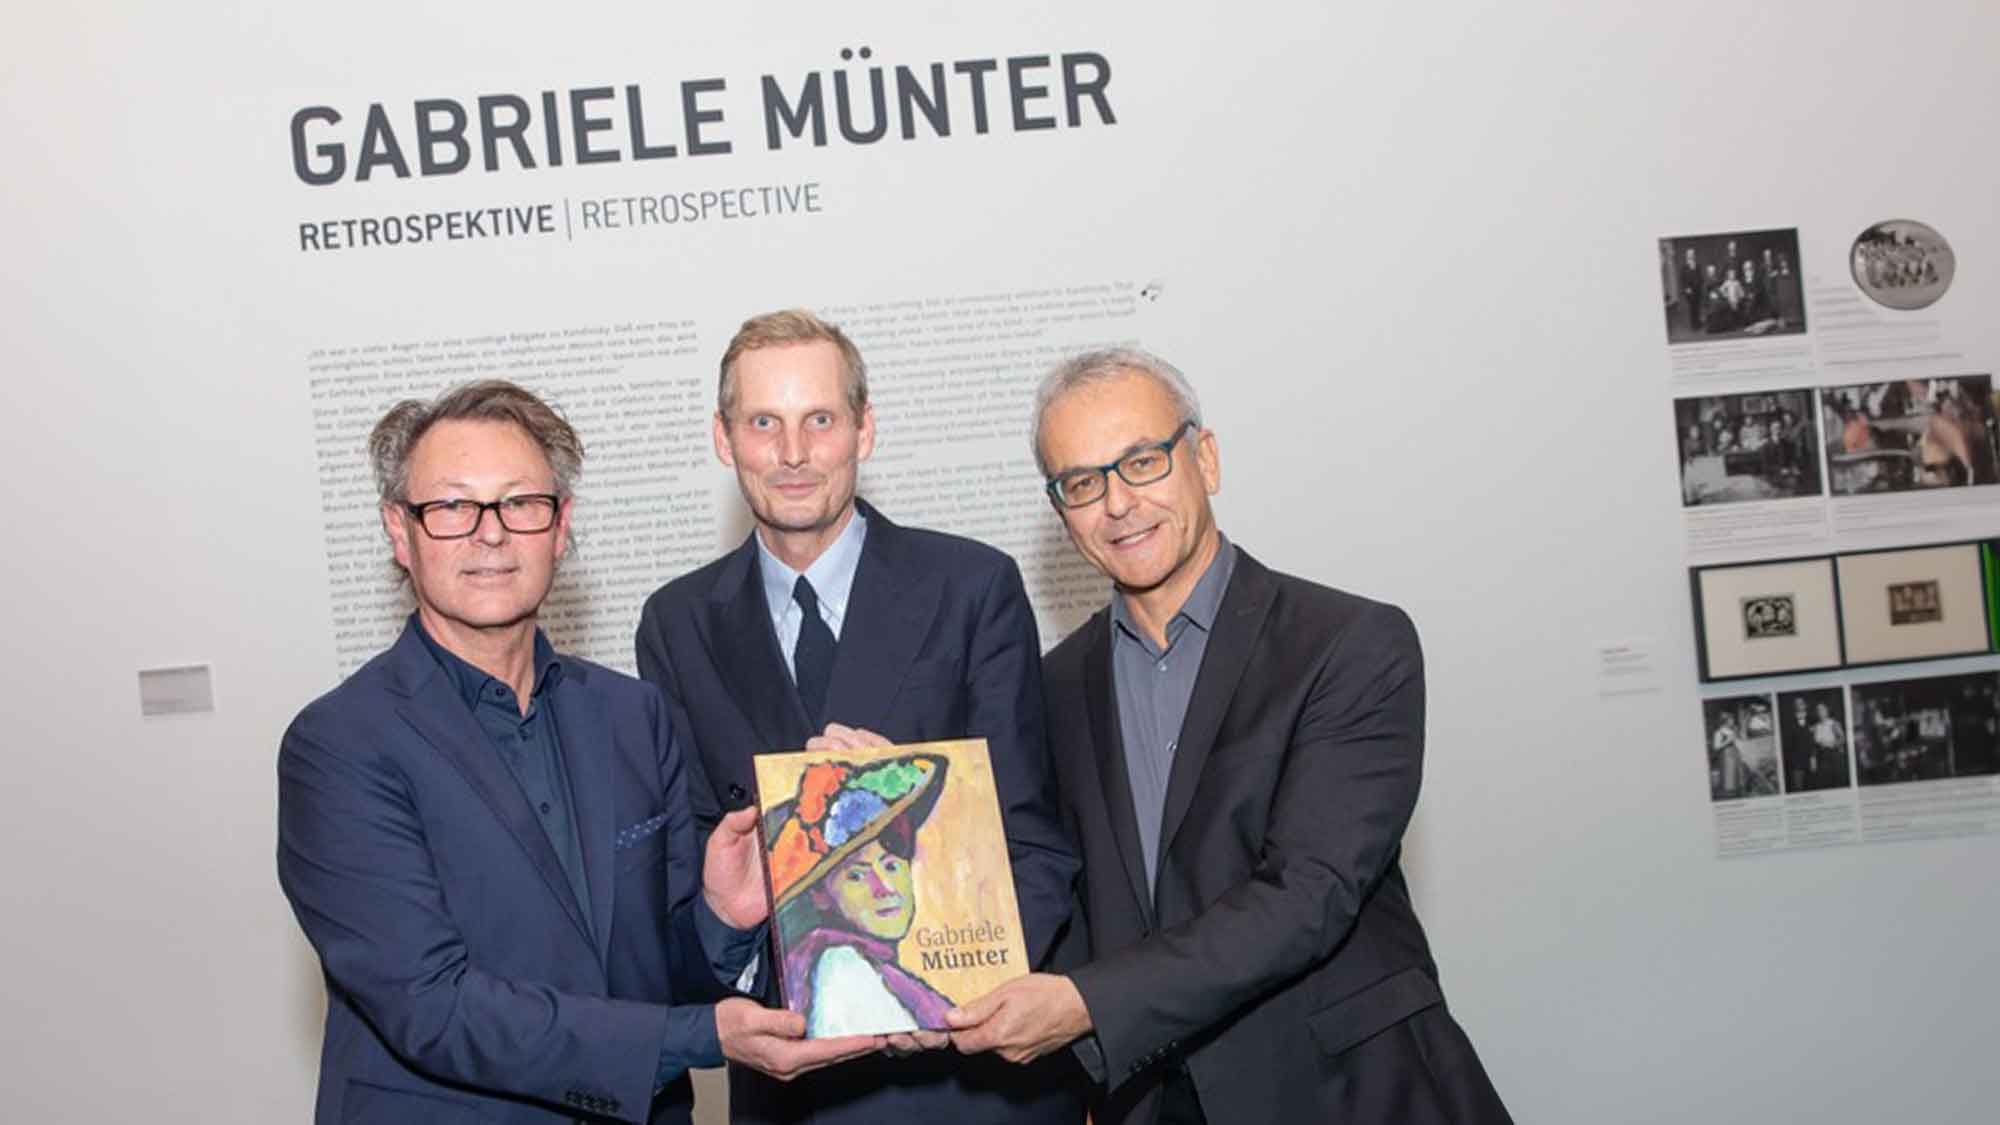 Leopold Museum präsentiert erste Ausstellung zum Schaffen der deutschen Expressionistin Gabriele Münter in Österreich